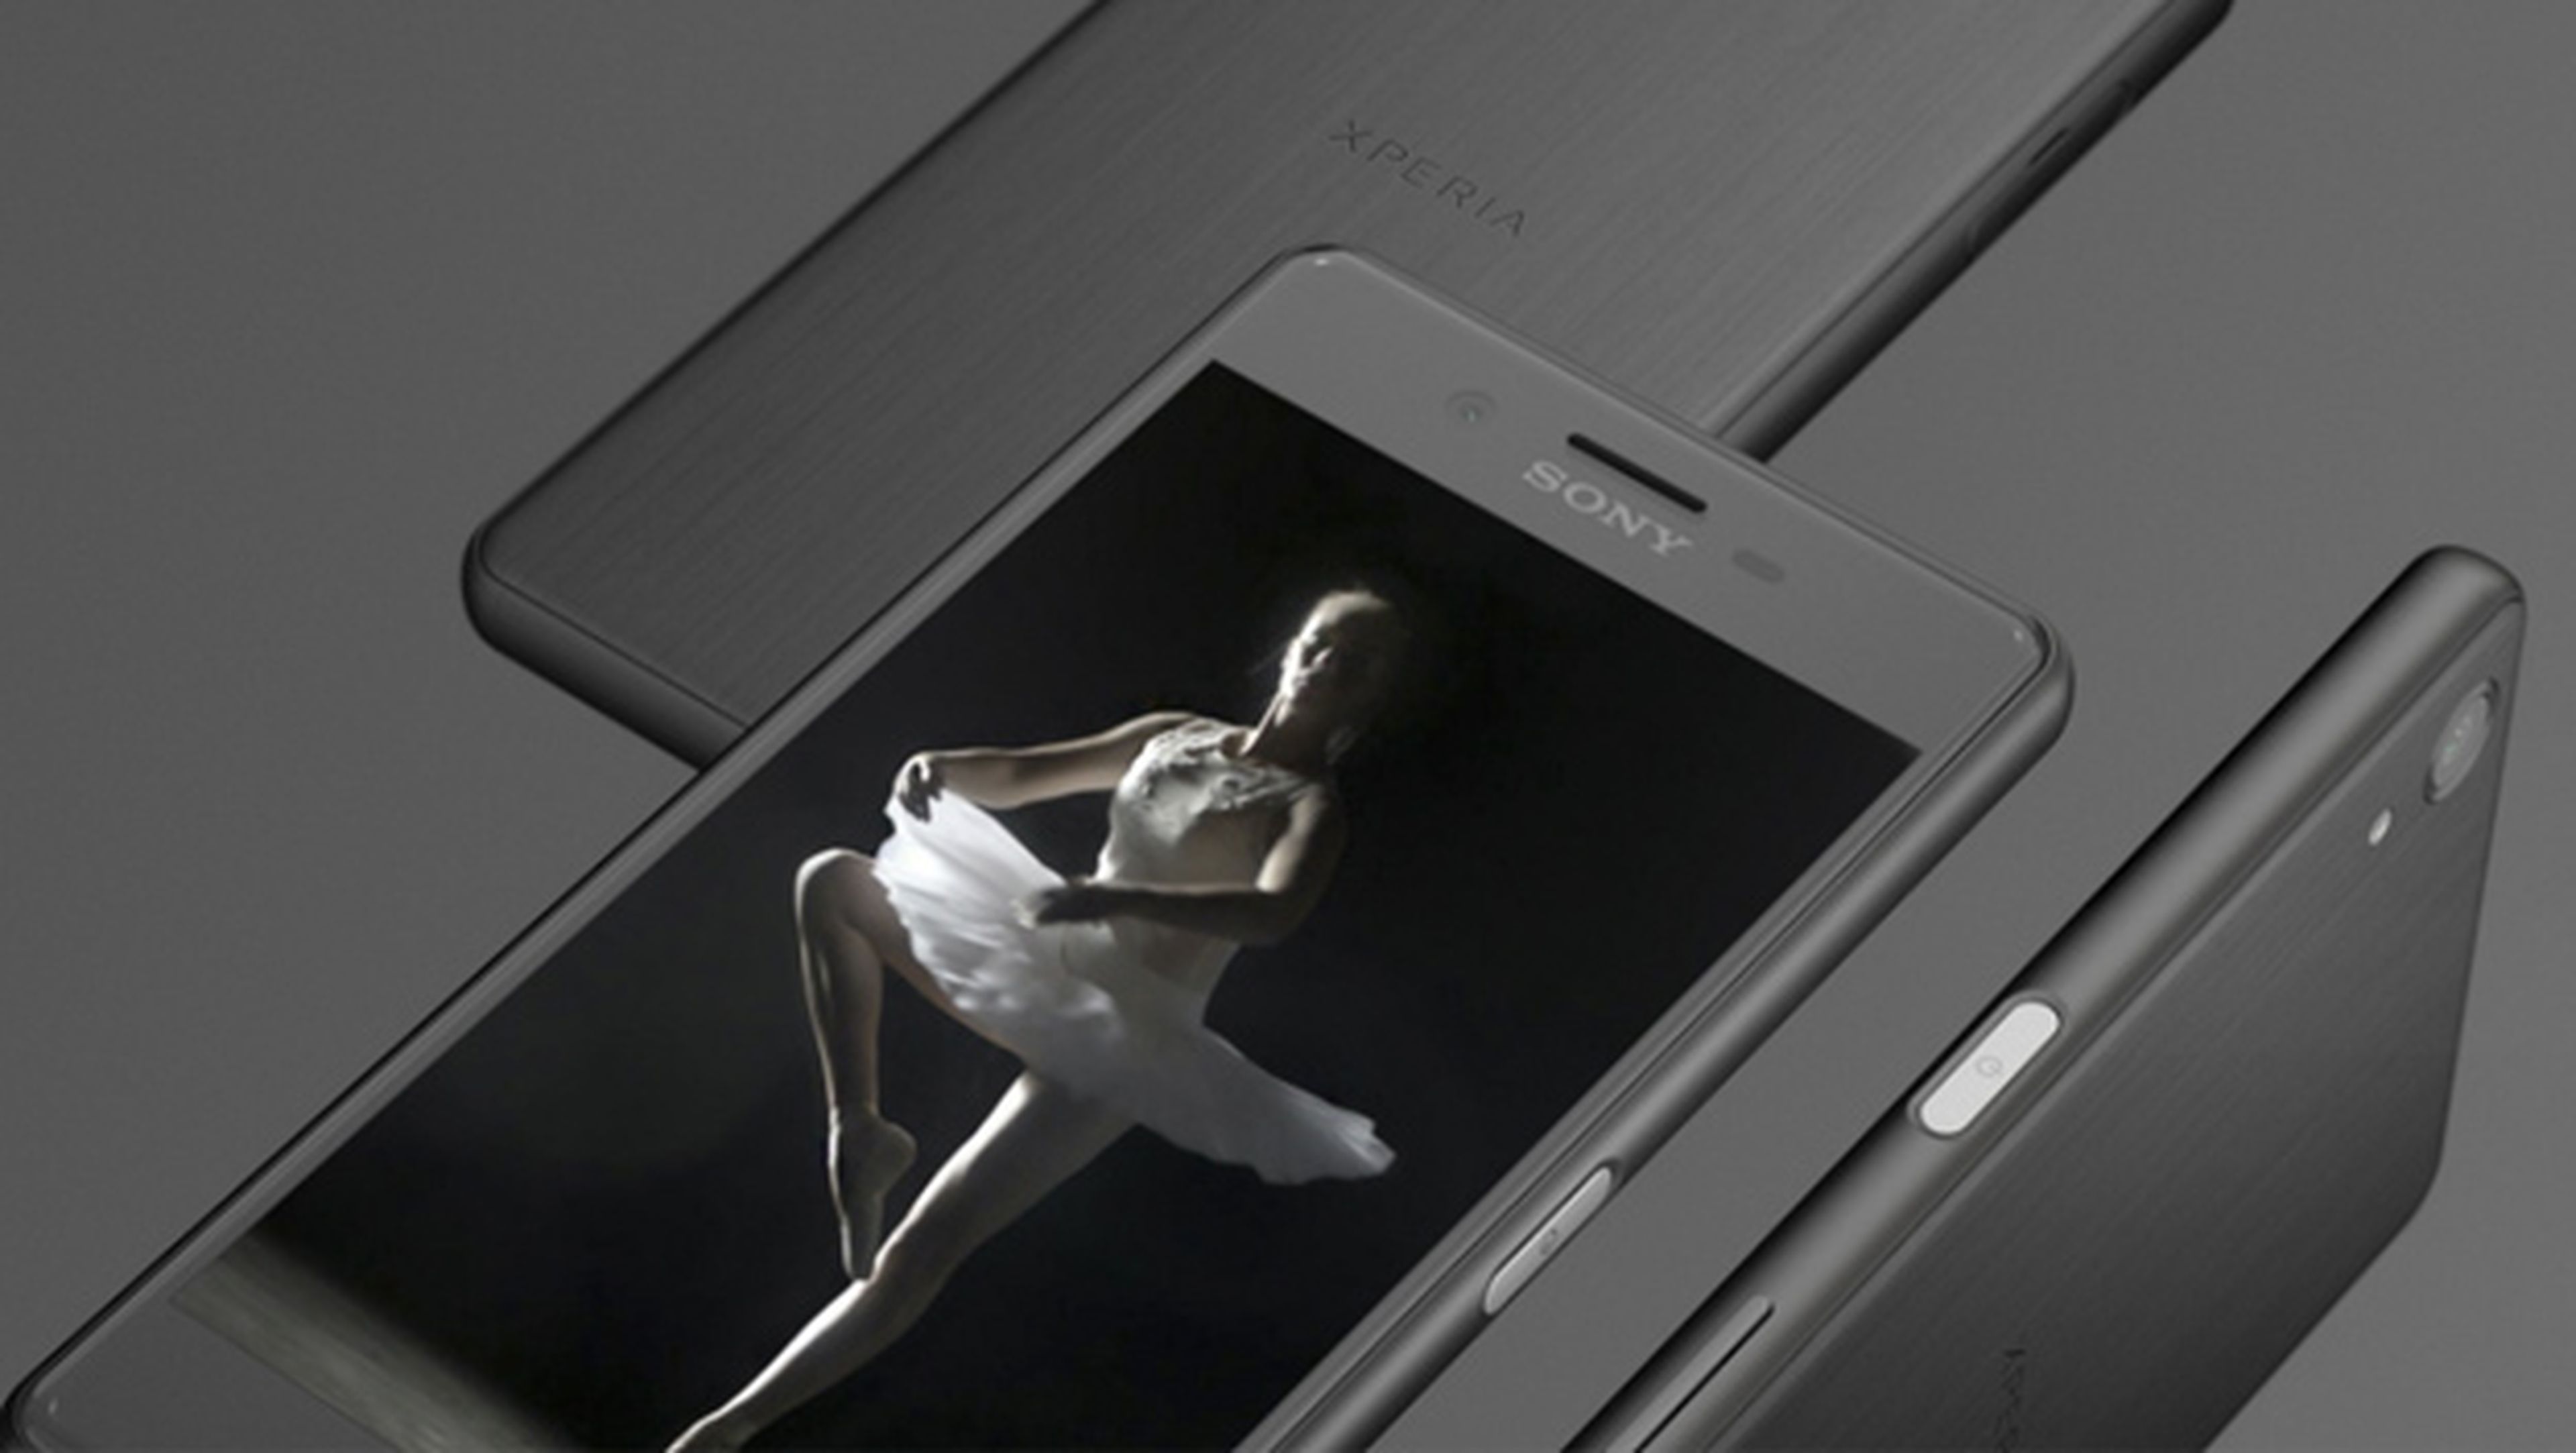 precio Sony Xperia X, características Sony Xperia X Performance, Sony Xperia A